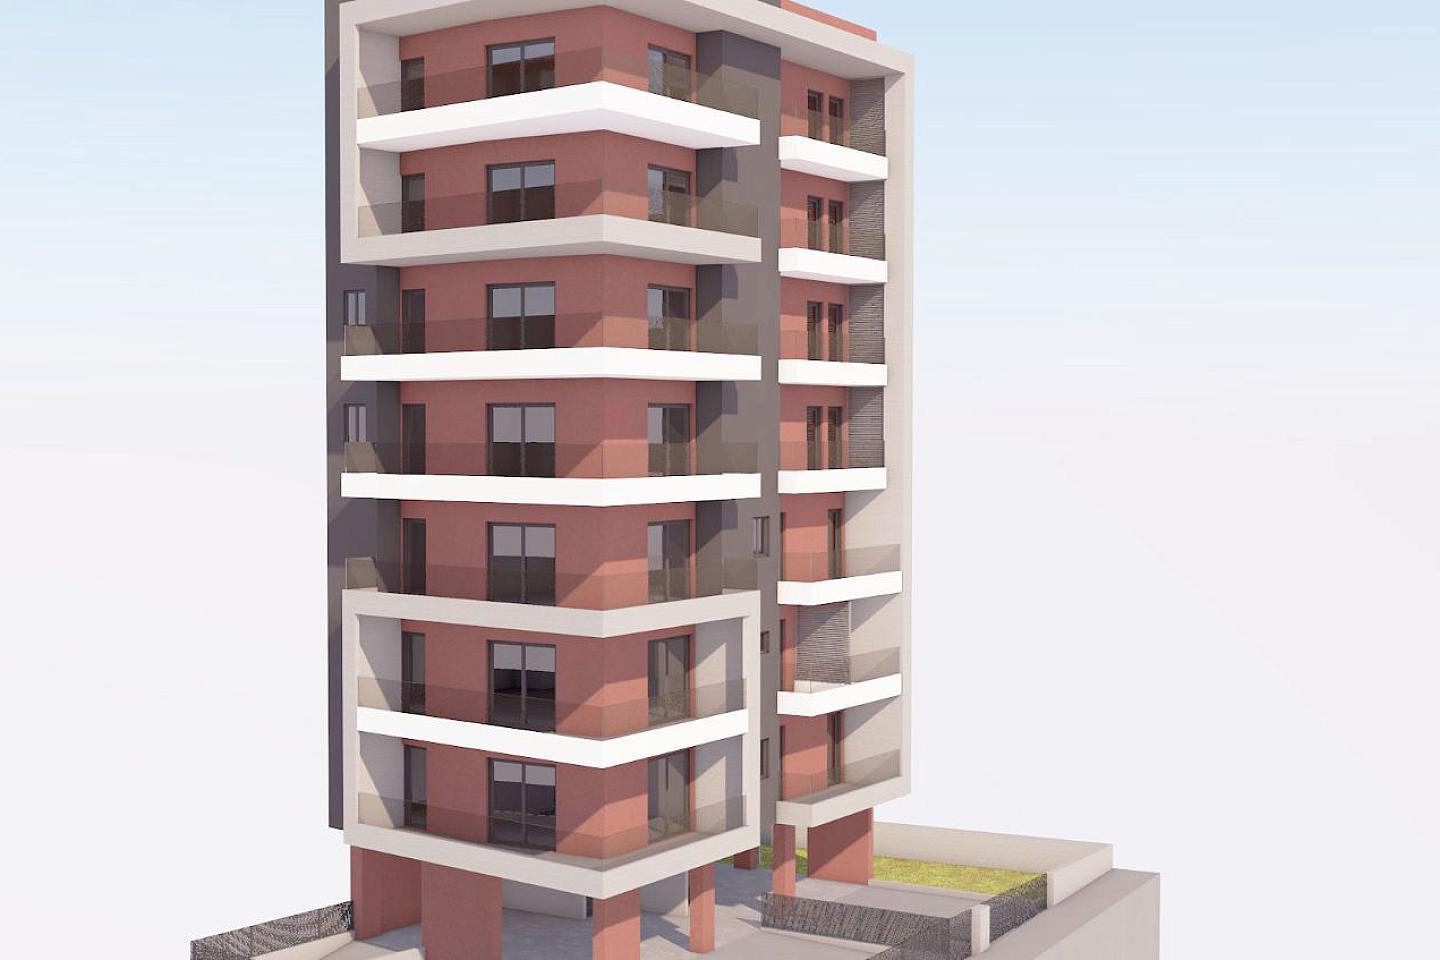 PALEO FALIRO, شقة طابق واحد, للبيع, 103.4 متر مربع